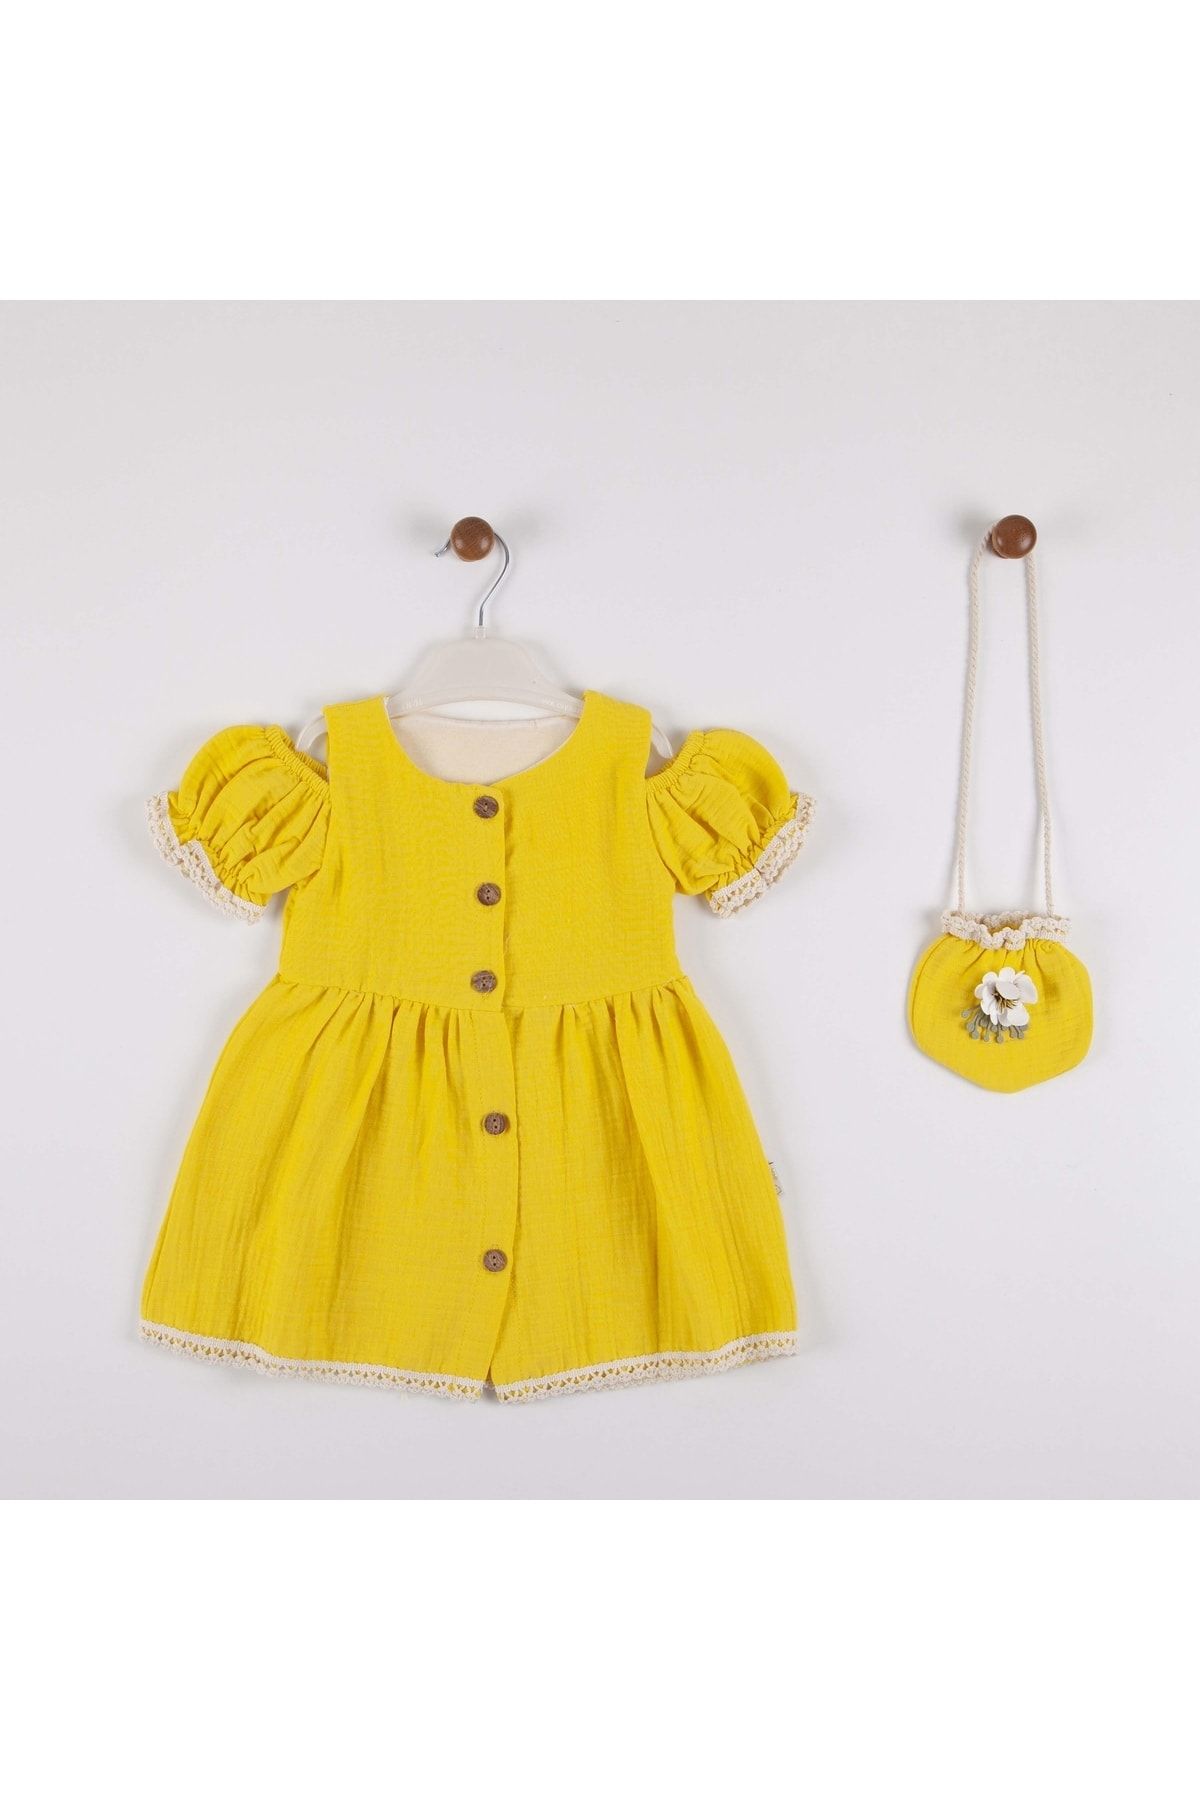 MİNİKO KİDS Kız Bebek Düşük Omuzlu Çantalı Pamuk Elbise